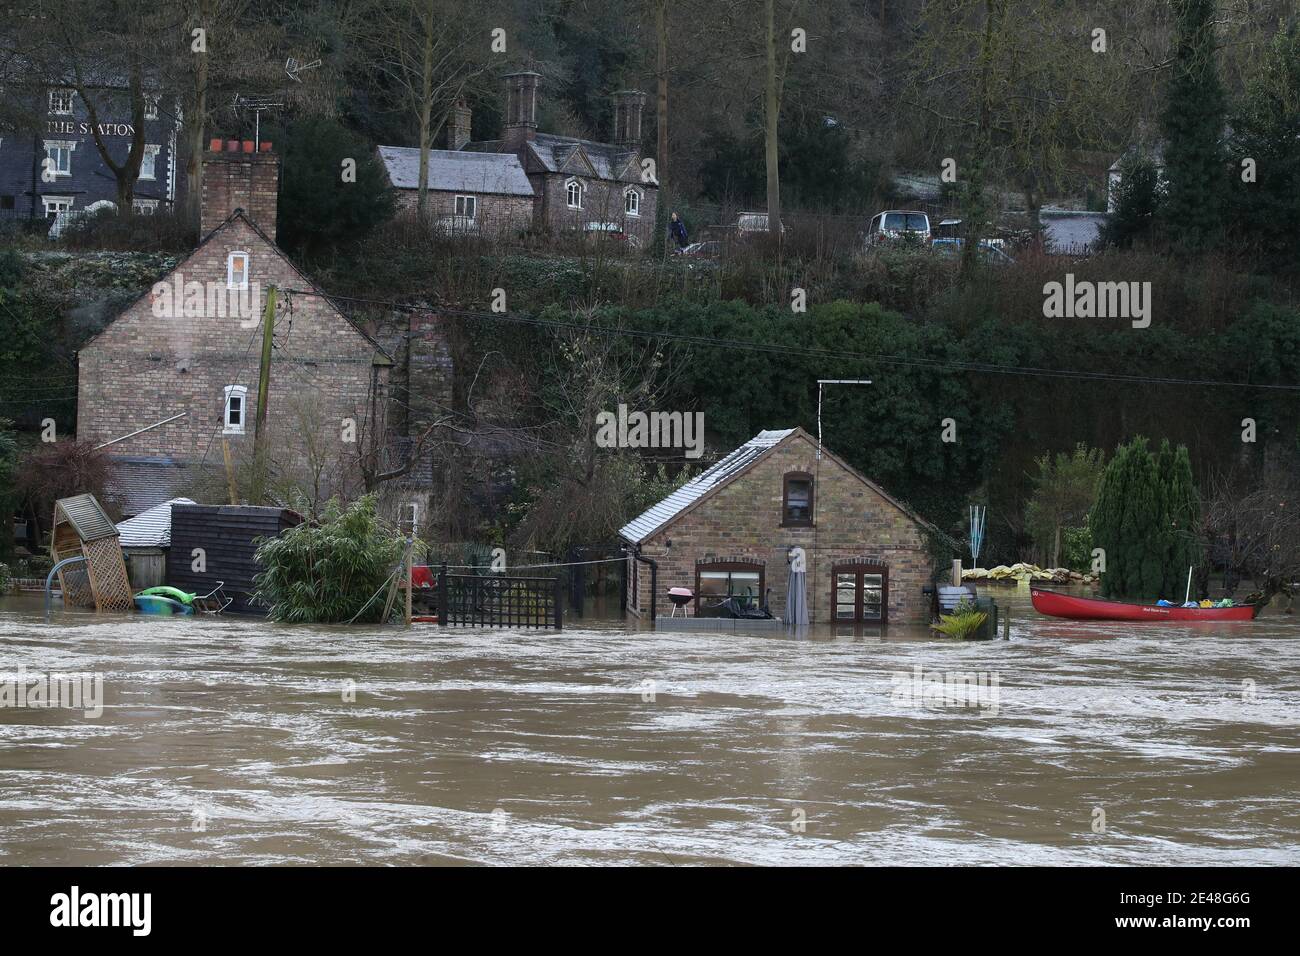 Une maison appartenant à Vic Haddock (à gauche) et à la Boathouse d'où il exploite son entreprise de location de canoës (à droite) sont entourées par les eaux de crue de la rivière Severn à Ironbridge, Shropshire, après que Storm Christoph ait causé des inondations à travers le Royaume-Uni. Date de la photo: Vendredi 22 janvier 2021. Banque D'Images